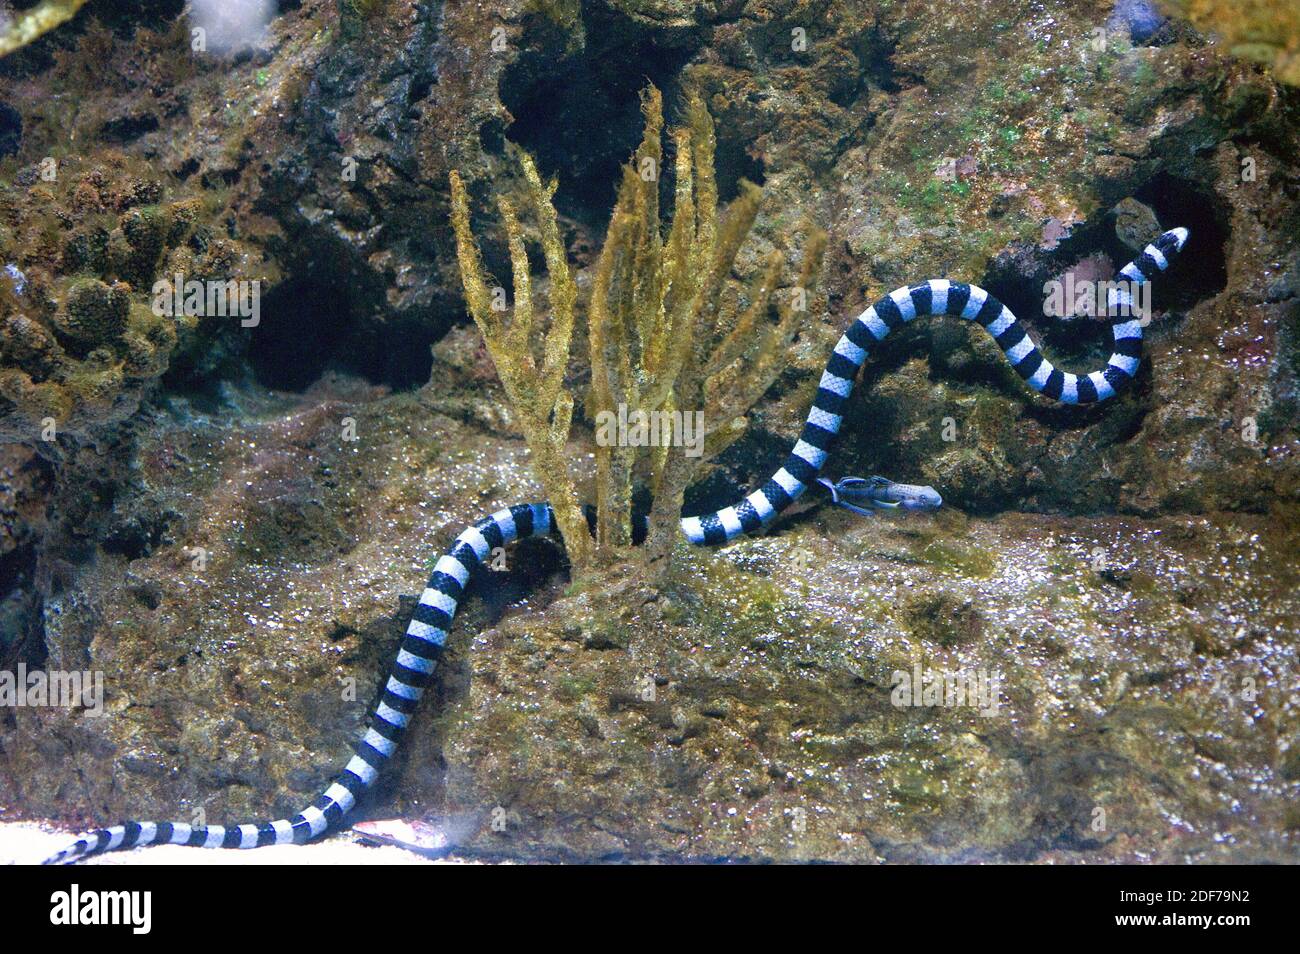 Il rito di mare azzurrato (Laticauda laticaudata) è un serpente di mare velenoso originario dell'Oceano Pacifico occidentale. Foto Stock